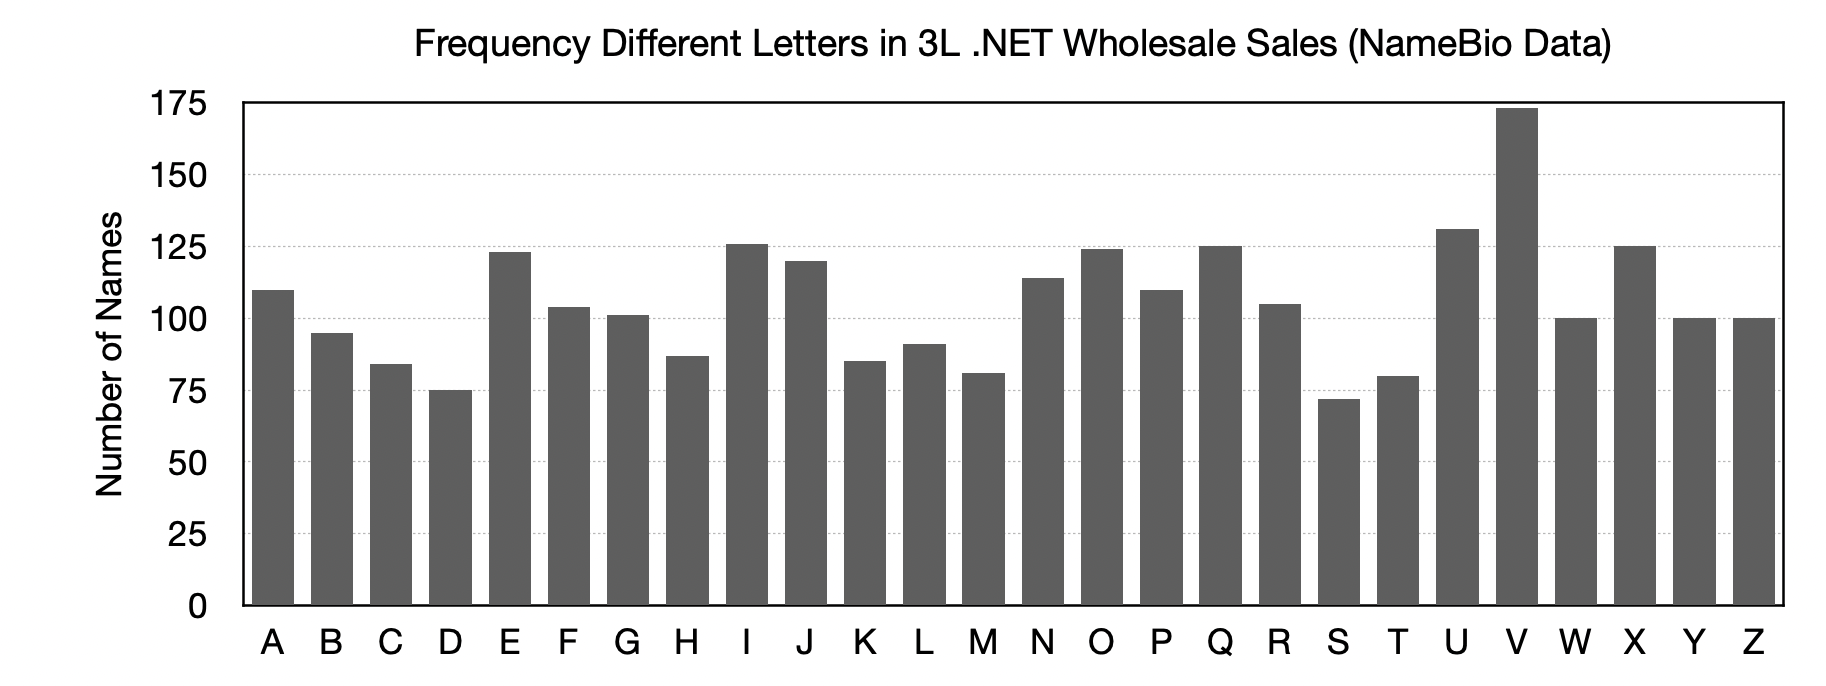 Image-Letters-Wholesale-NET.png